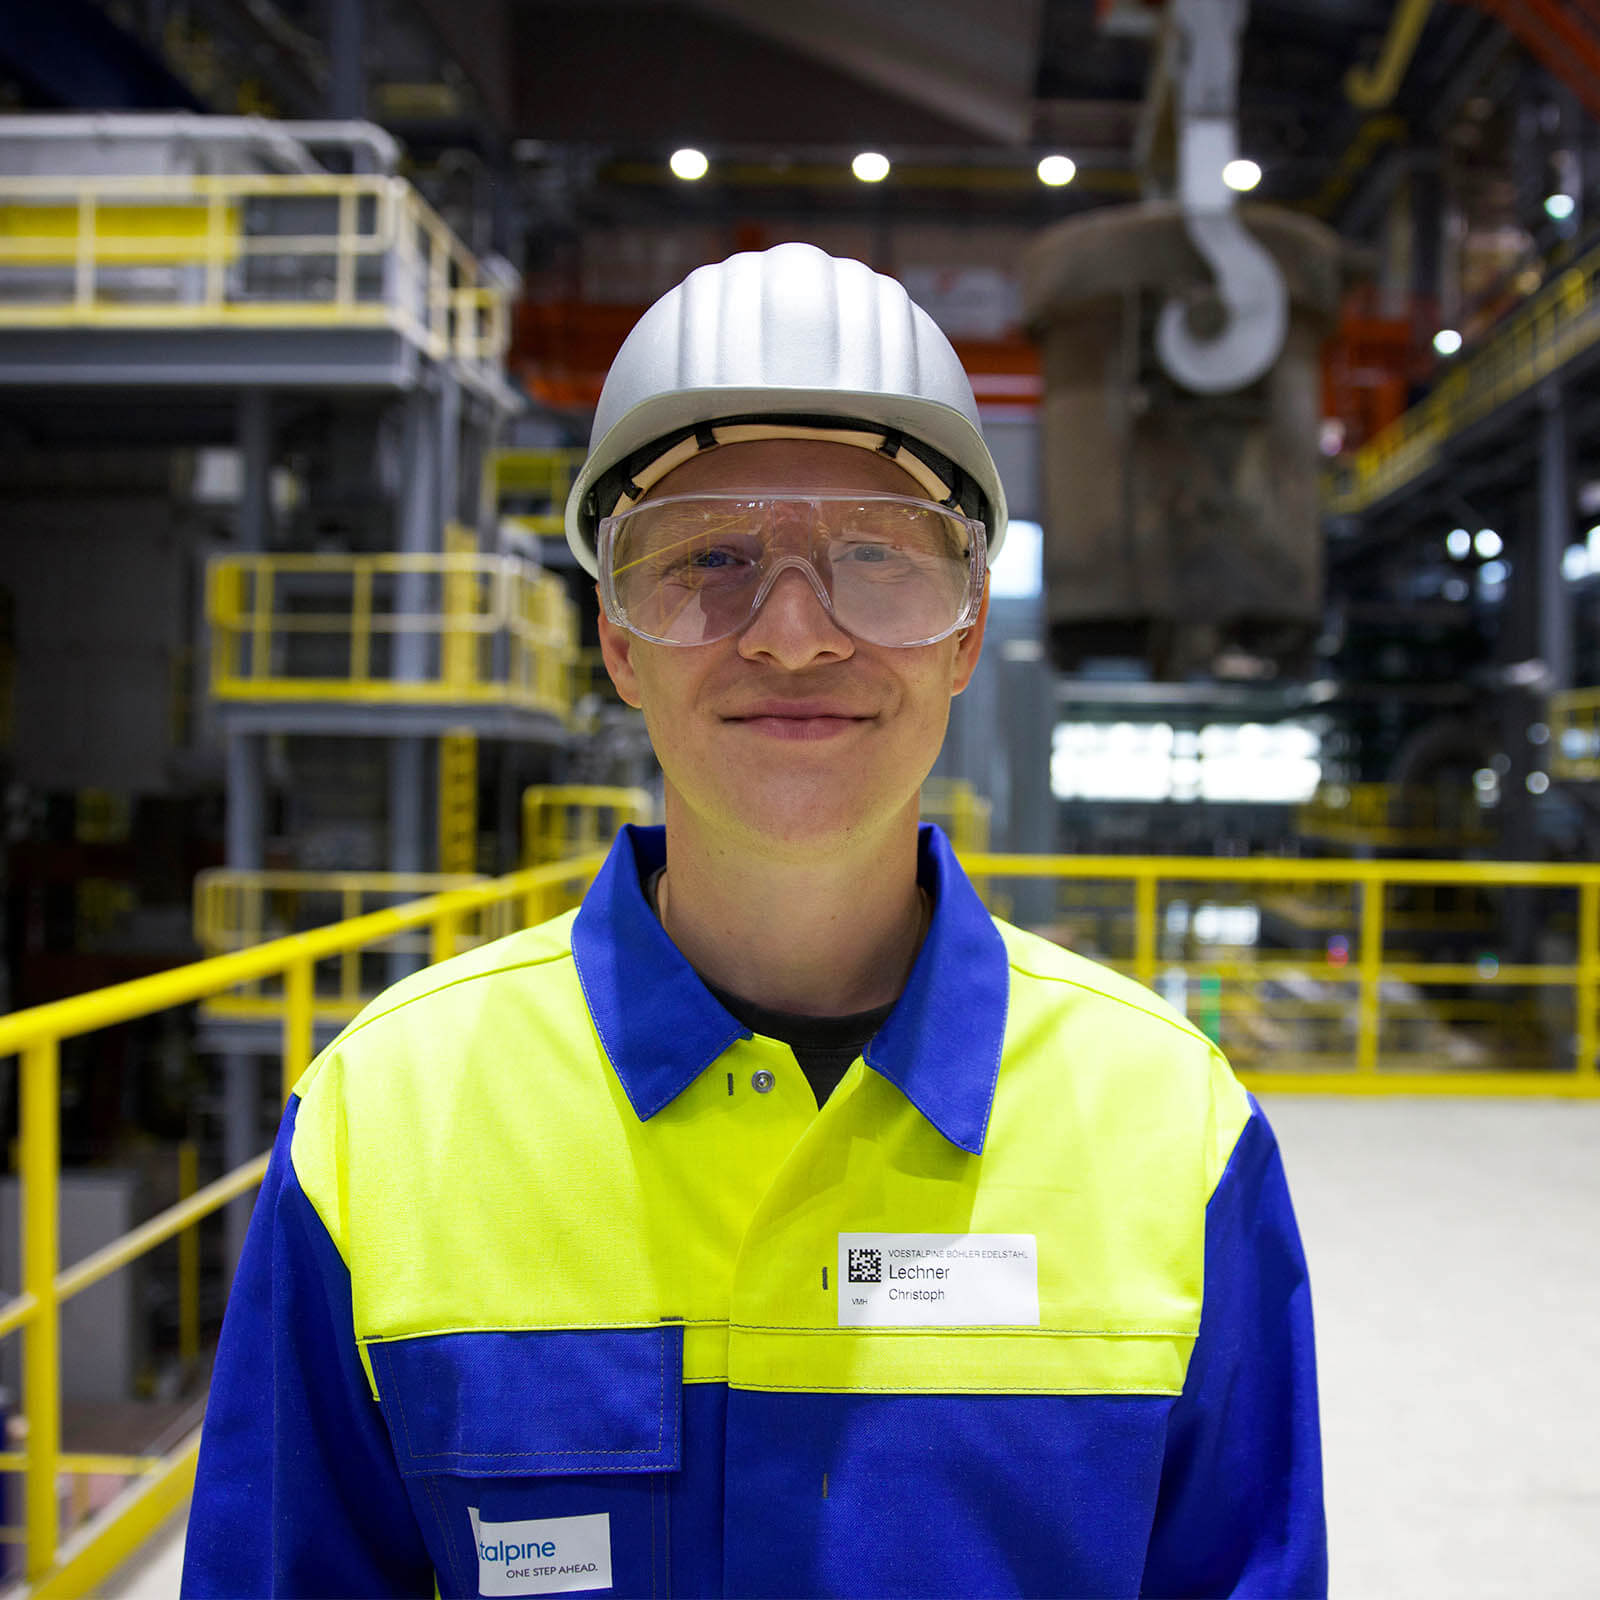 Christoph trägt blau-gelbe Arbeitskleidung, eine Schutzbrille und einen weißen Arbeitshelm und lächelt auf einer Plattform in einer Werkshalle in die Kamera